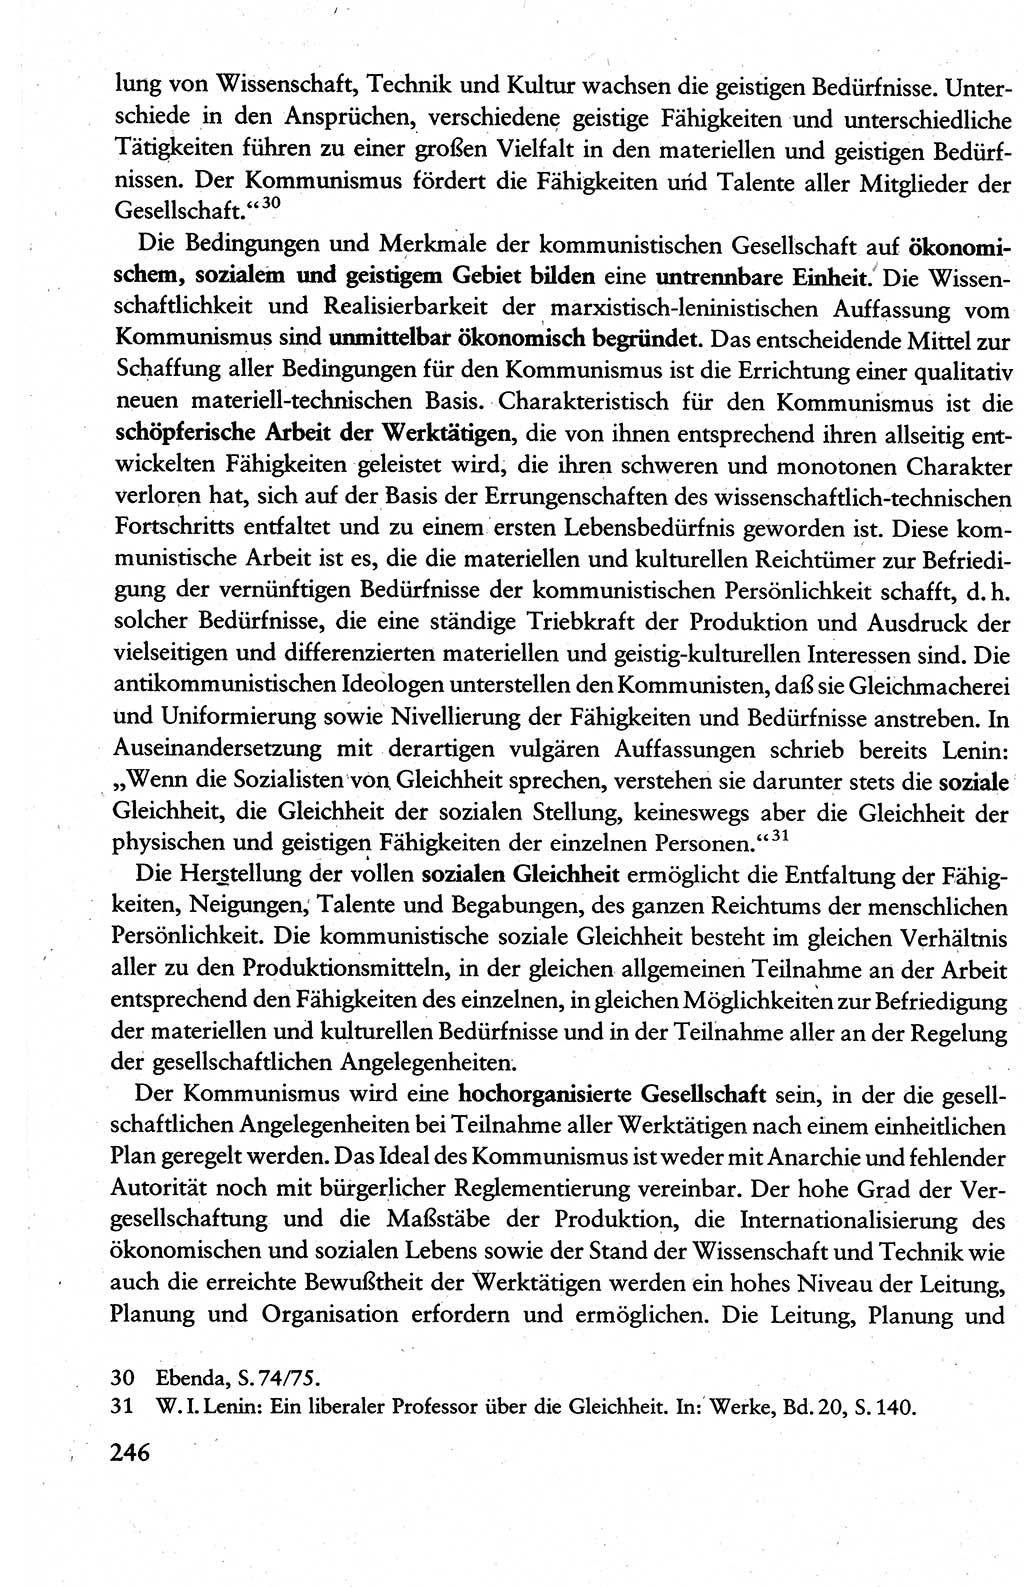 Wissenschaftlicher Kommunismus [Deutsche Demokratische Republik (DDR)], Lehrbuch für das marxistisch-leninistische Grundlagenstudium 1983, Seite 246 (Wiss. Komm. DDR Lb. 1983, S. 246)